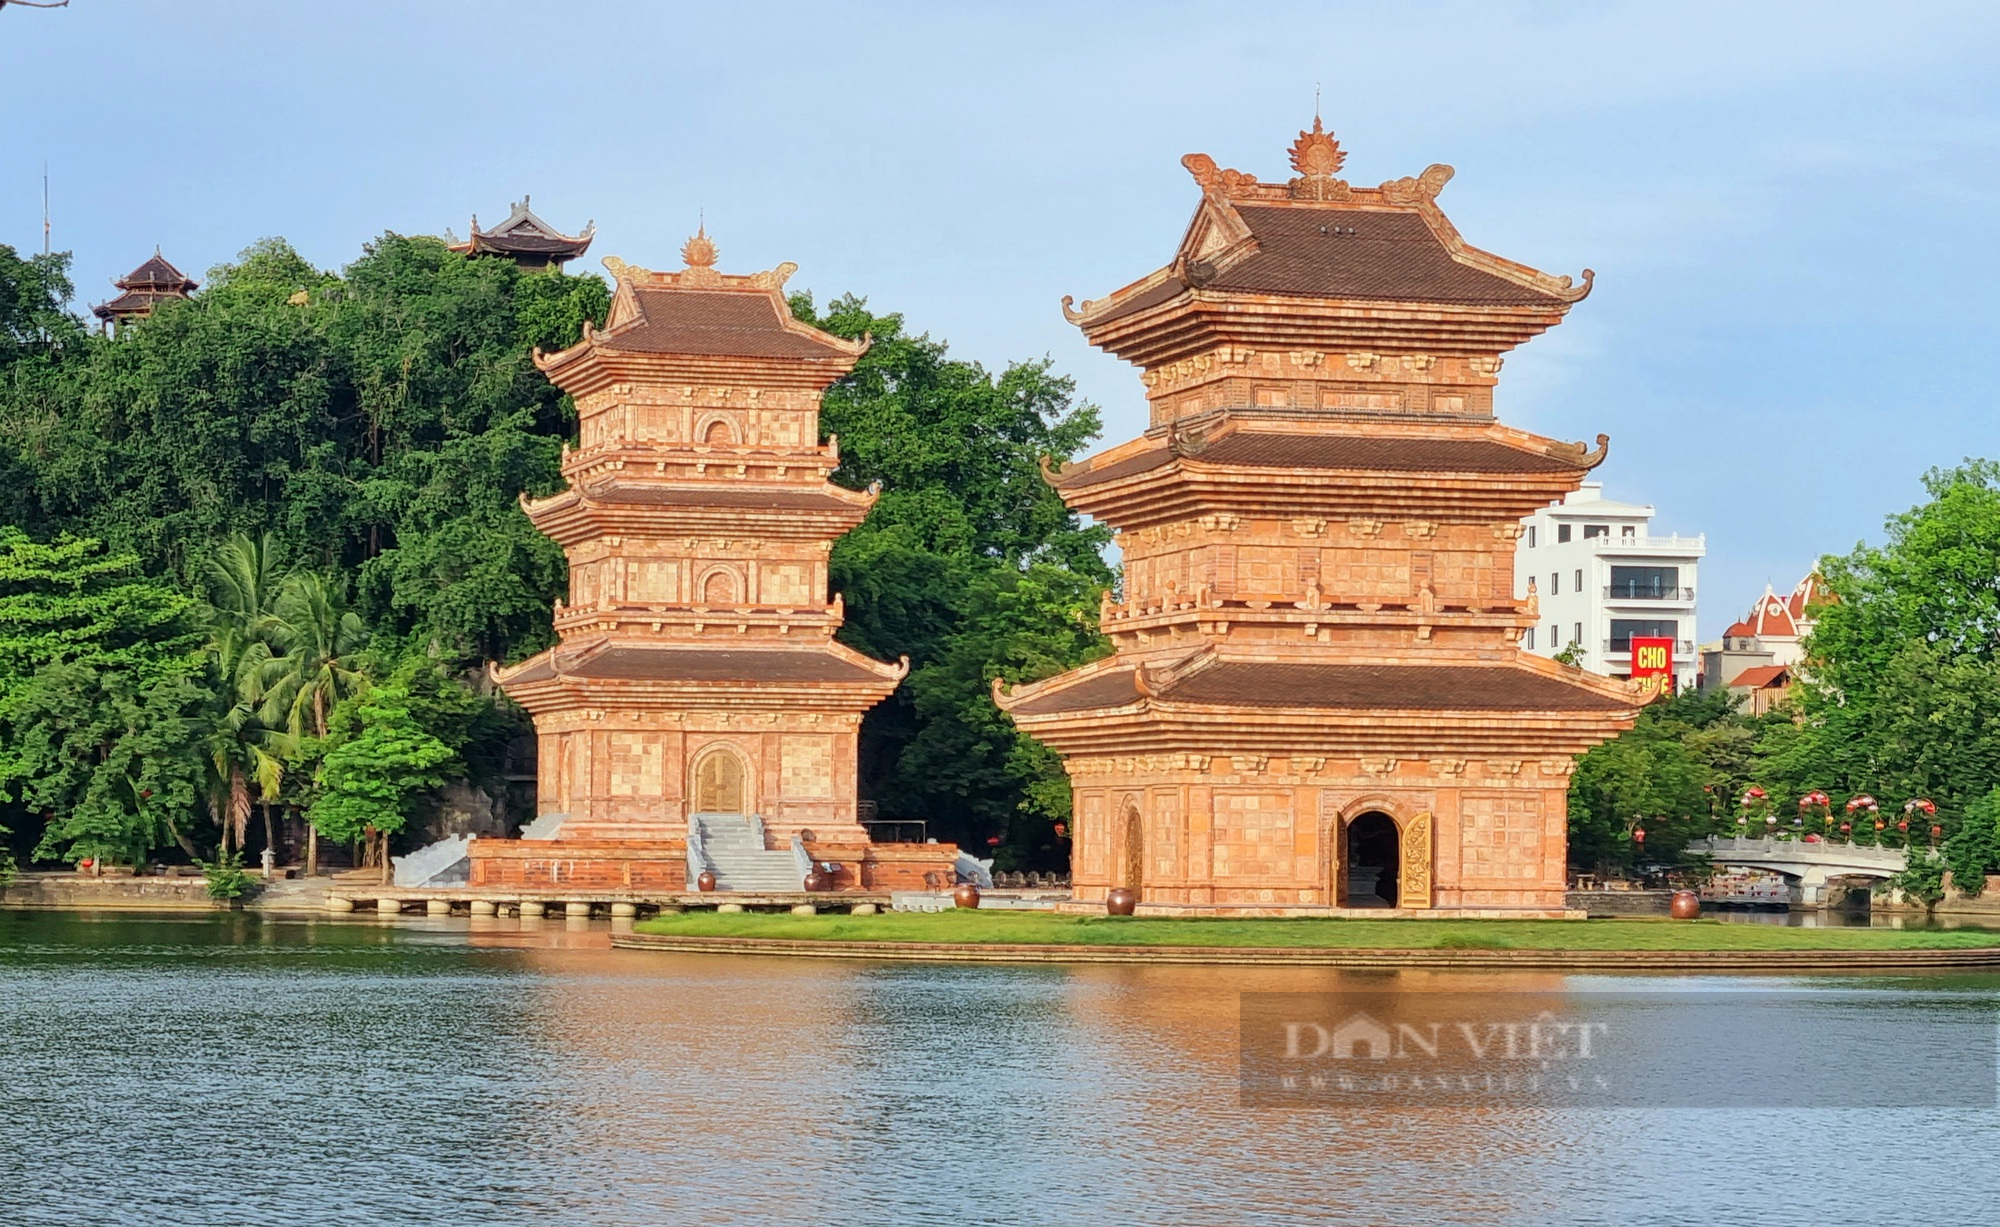 Quy hoạch đô thị Ninh Bình thành trung tâm dịch vụ, du lịch sinh thái văn hóa - Ảnh 3.